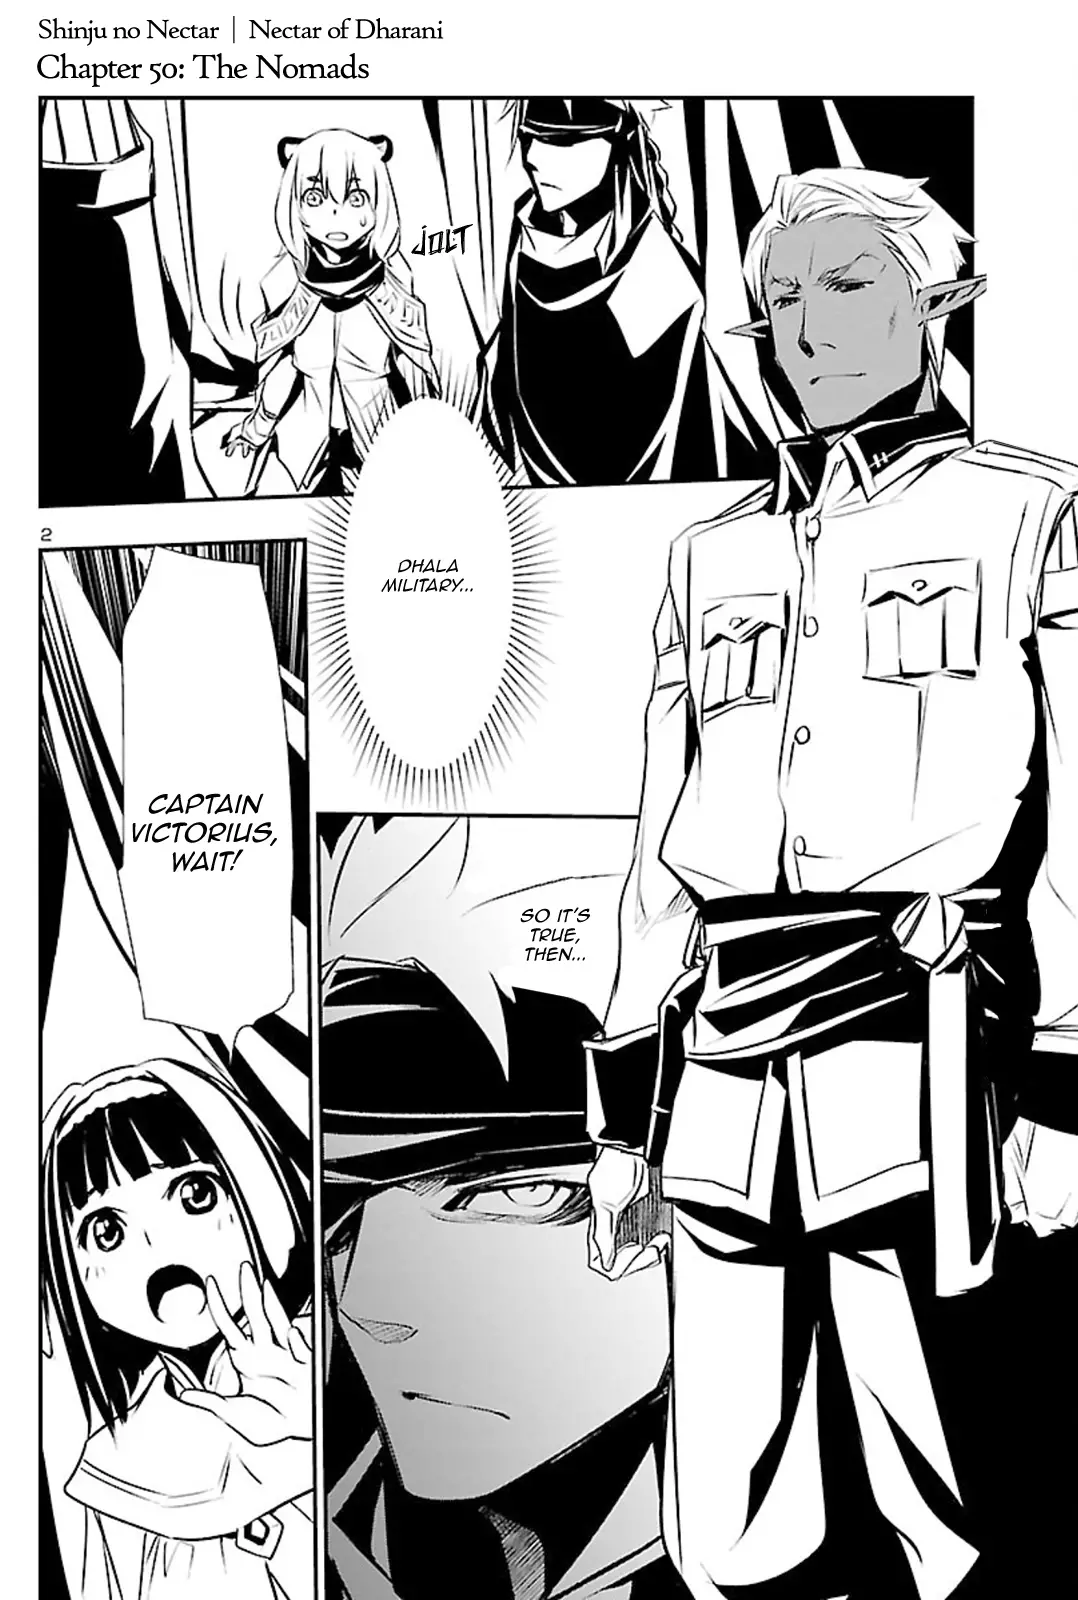 Shinju no Nectar - 50 page 1